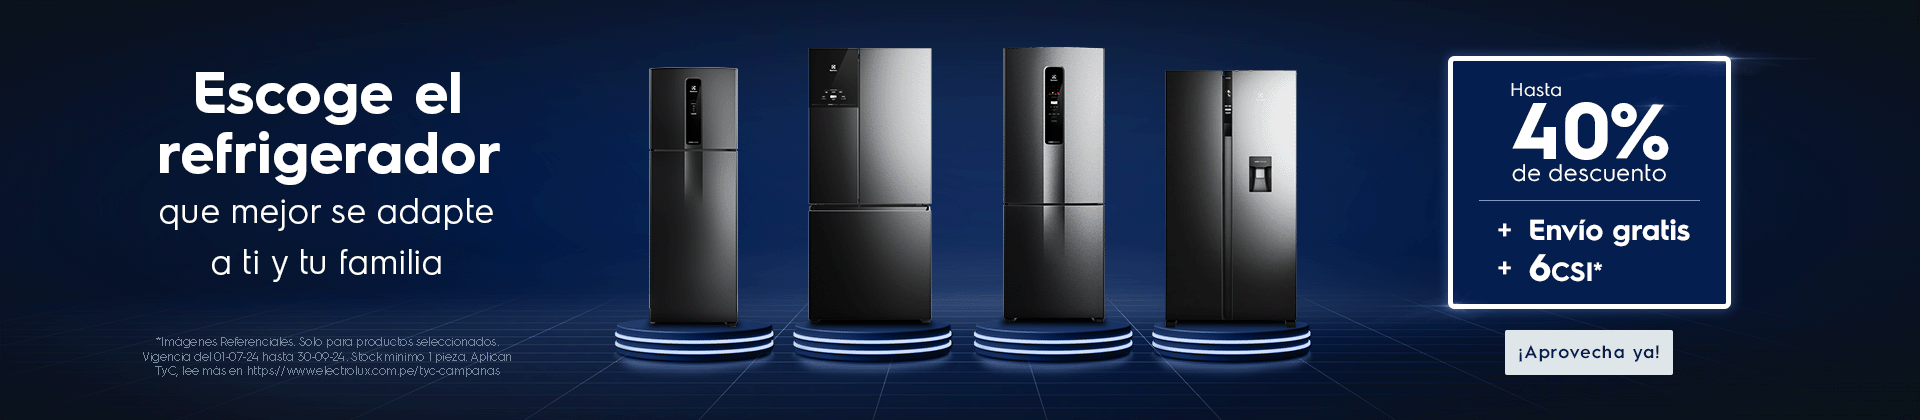 Escoge el refrigerador Electrolux que mejor se adapte a ti y tu familia hasta 40% dscto